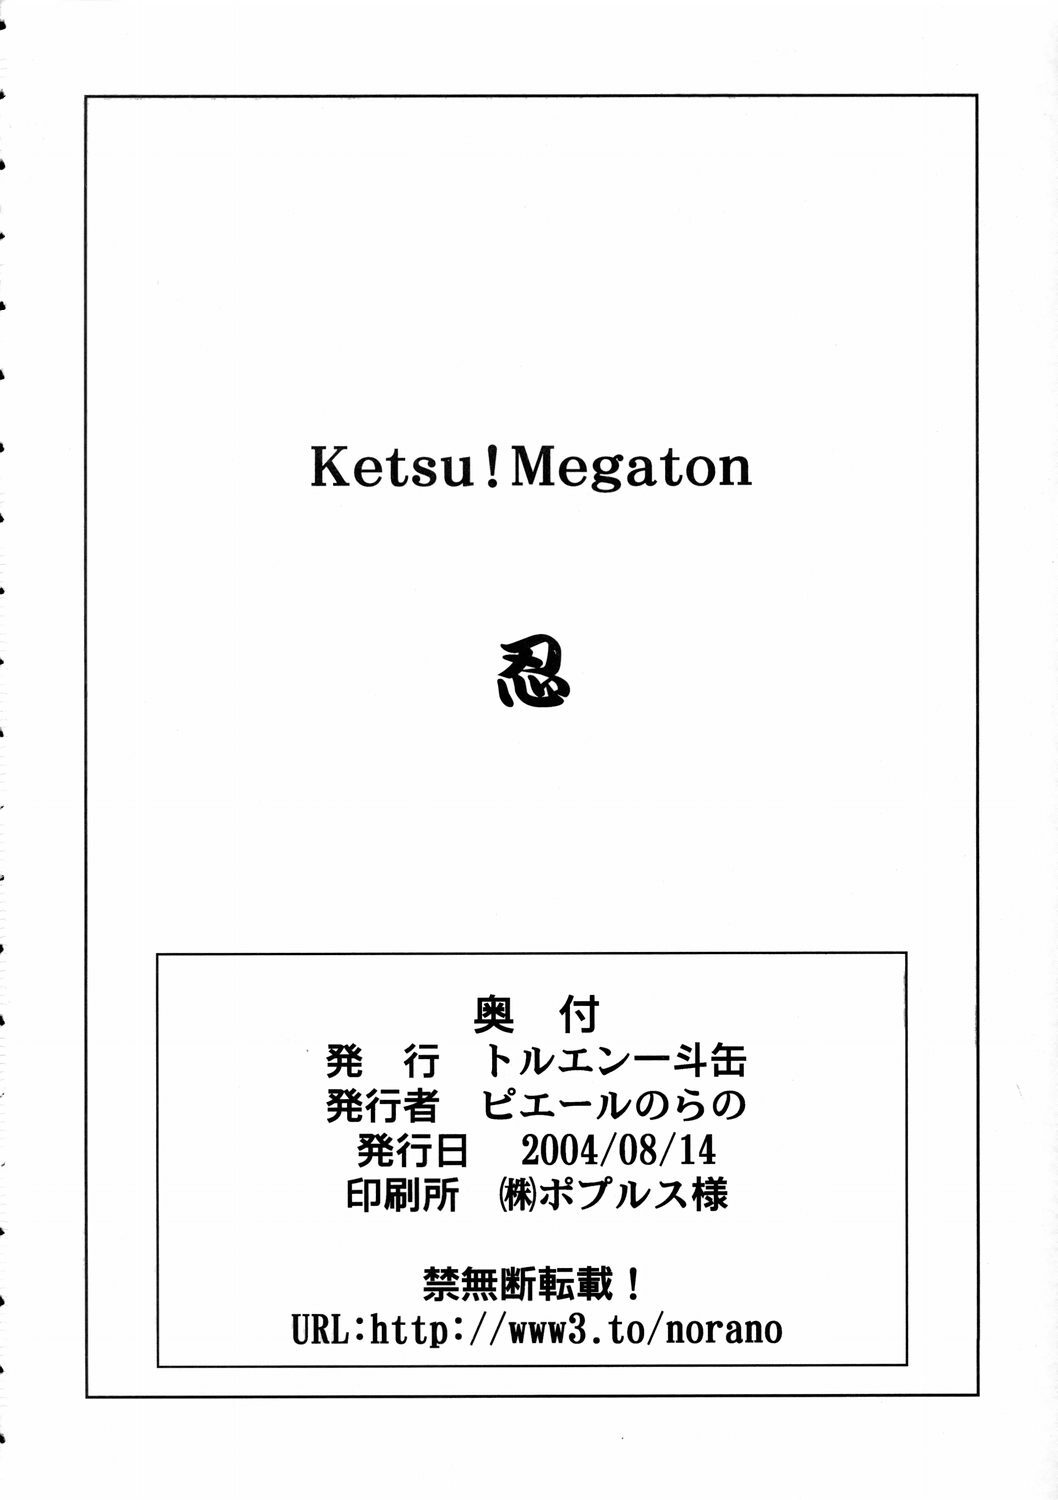 (C66) [Toluene Ittokan (Pierre Norano)] Ketsu! Megaton Nin (Naruto) page 47 full